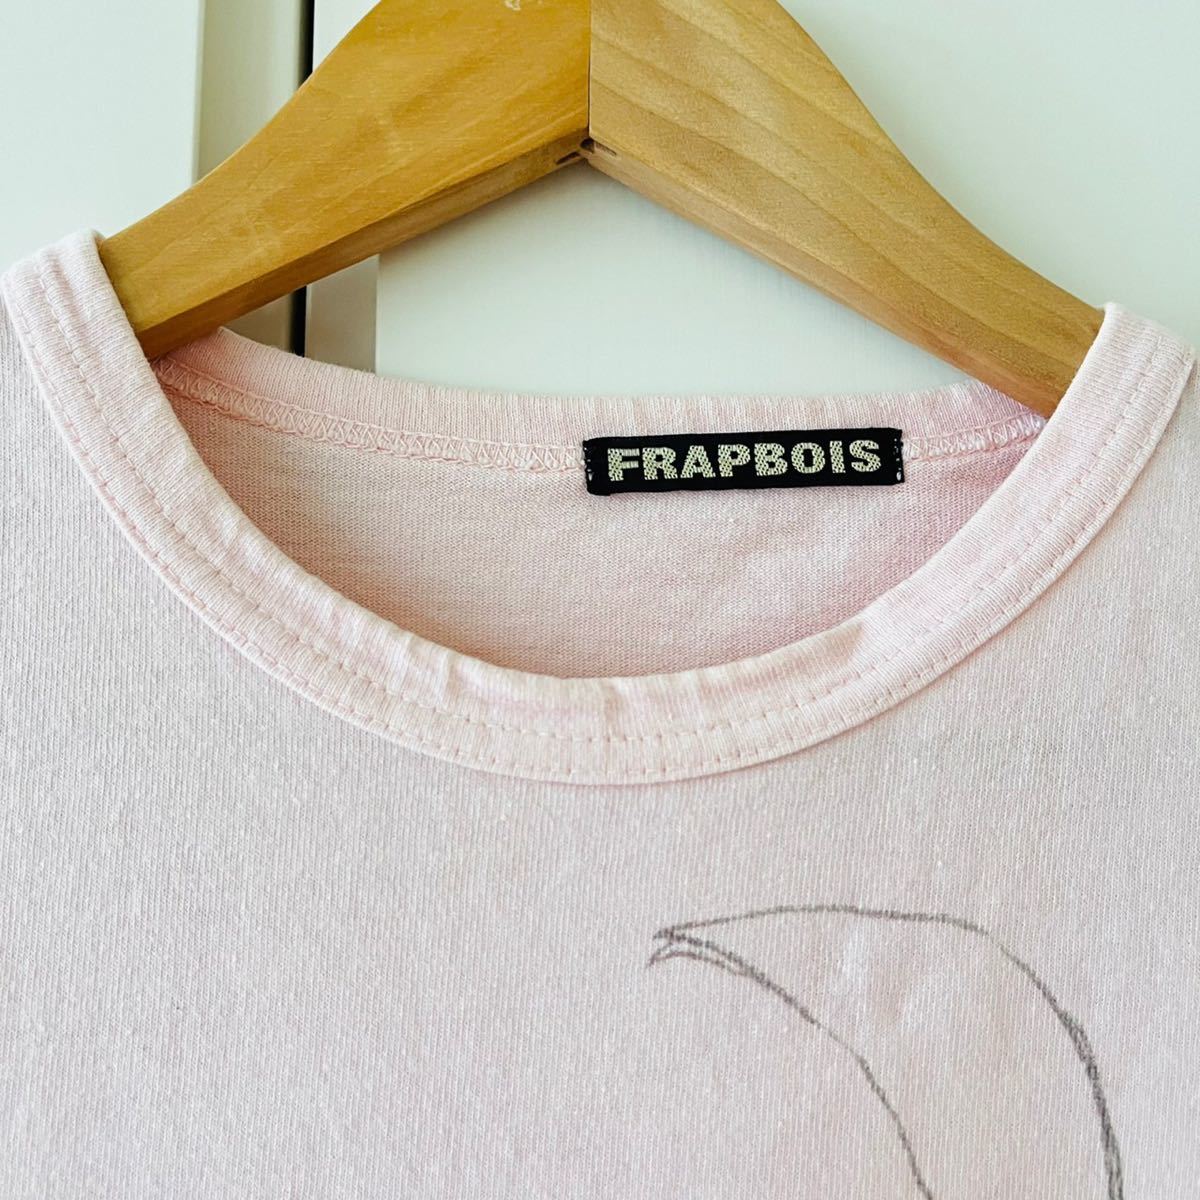 F5750cb FRAPBOIS  створка  ... стул 　 футболка с коротким руковом 　1(S〜M...)  розовый 　 женский 　 принт  футболка   птица 　 простой 　 повседневный 　 корея  пр-во  